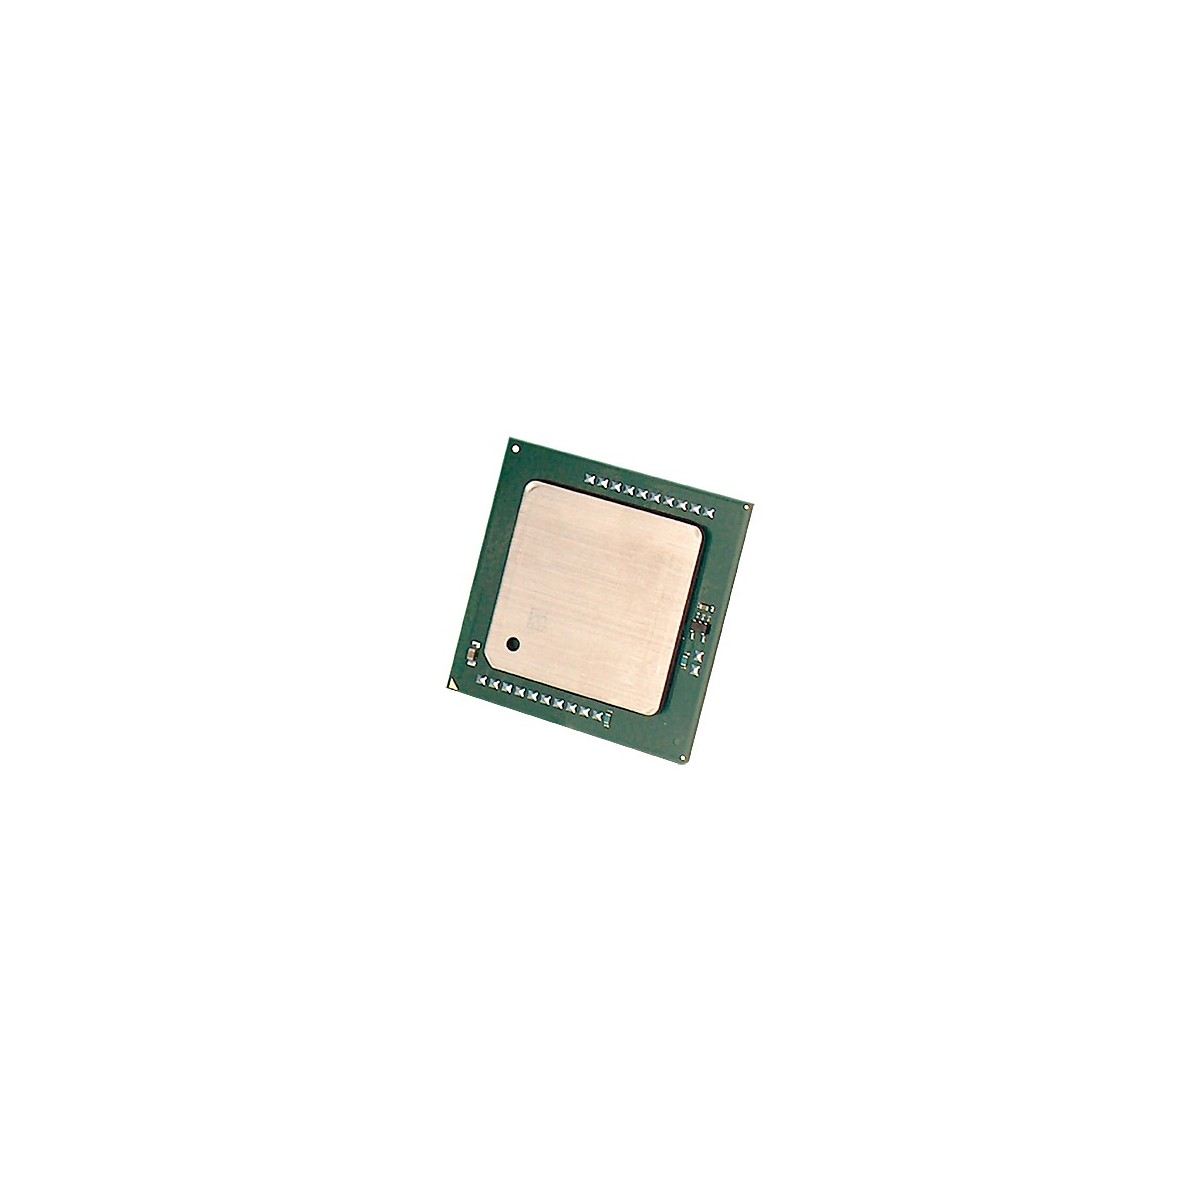 HPE DL380p Gen8 Intel Xeon E5-2620v2 6C 2.1GHz - Intel® Xeon® E5 V2 Family - LGA 2011 (Socket R) - Server-workstation - 22 nm - 